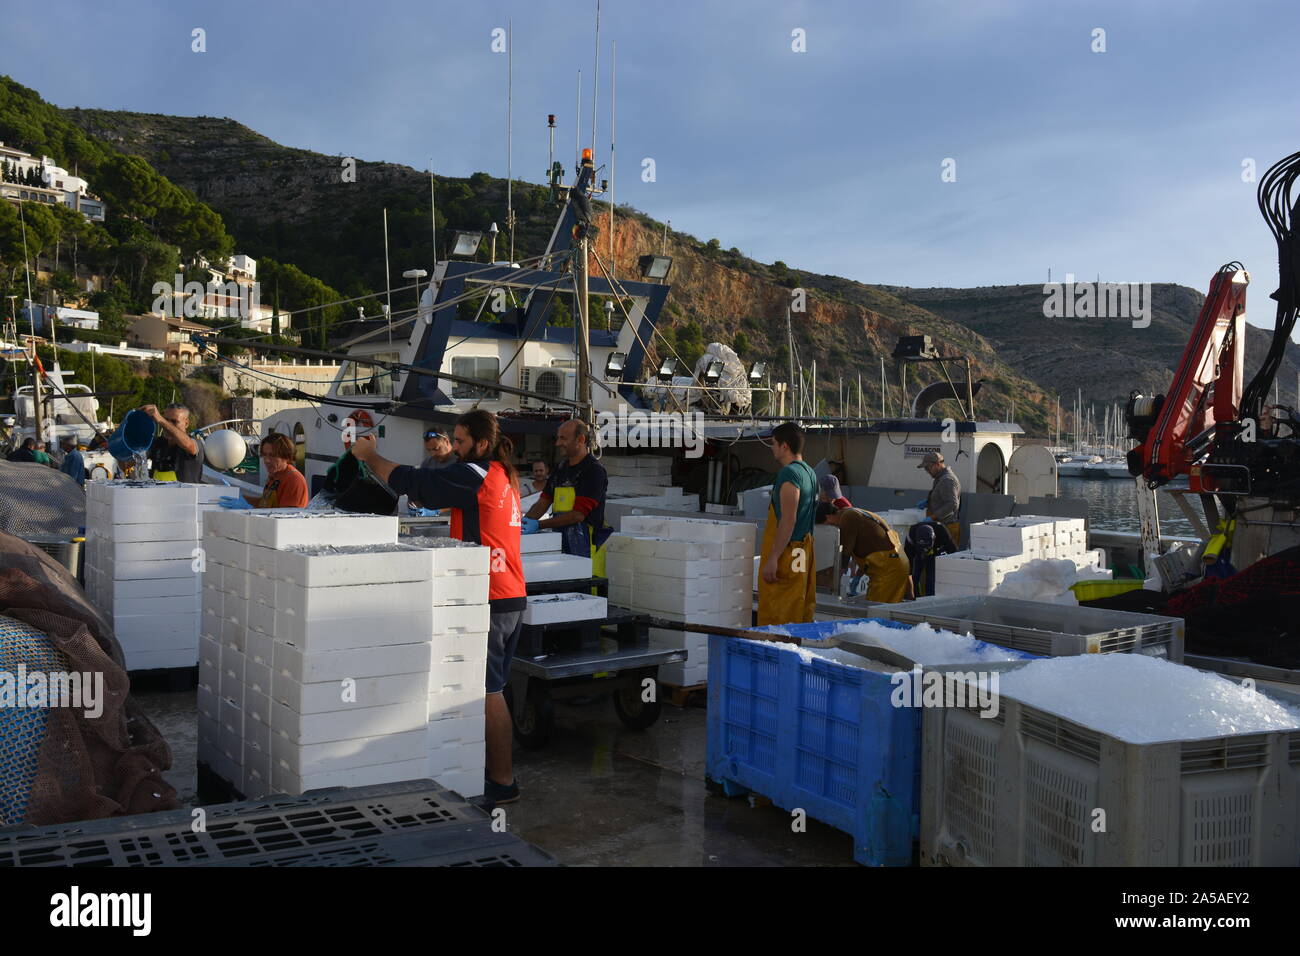 Boxen von fangfrischen Sardinen und Eis entladen von einem Fischtrawler, mit Fischern in ölzeug auf dem Boot im Hintergrund, Javea, Spanien Stockfoto